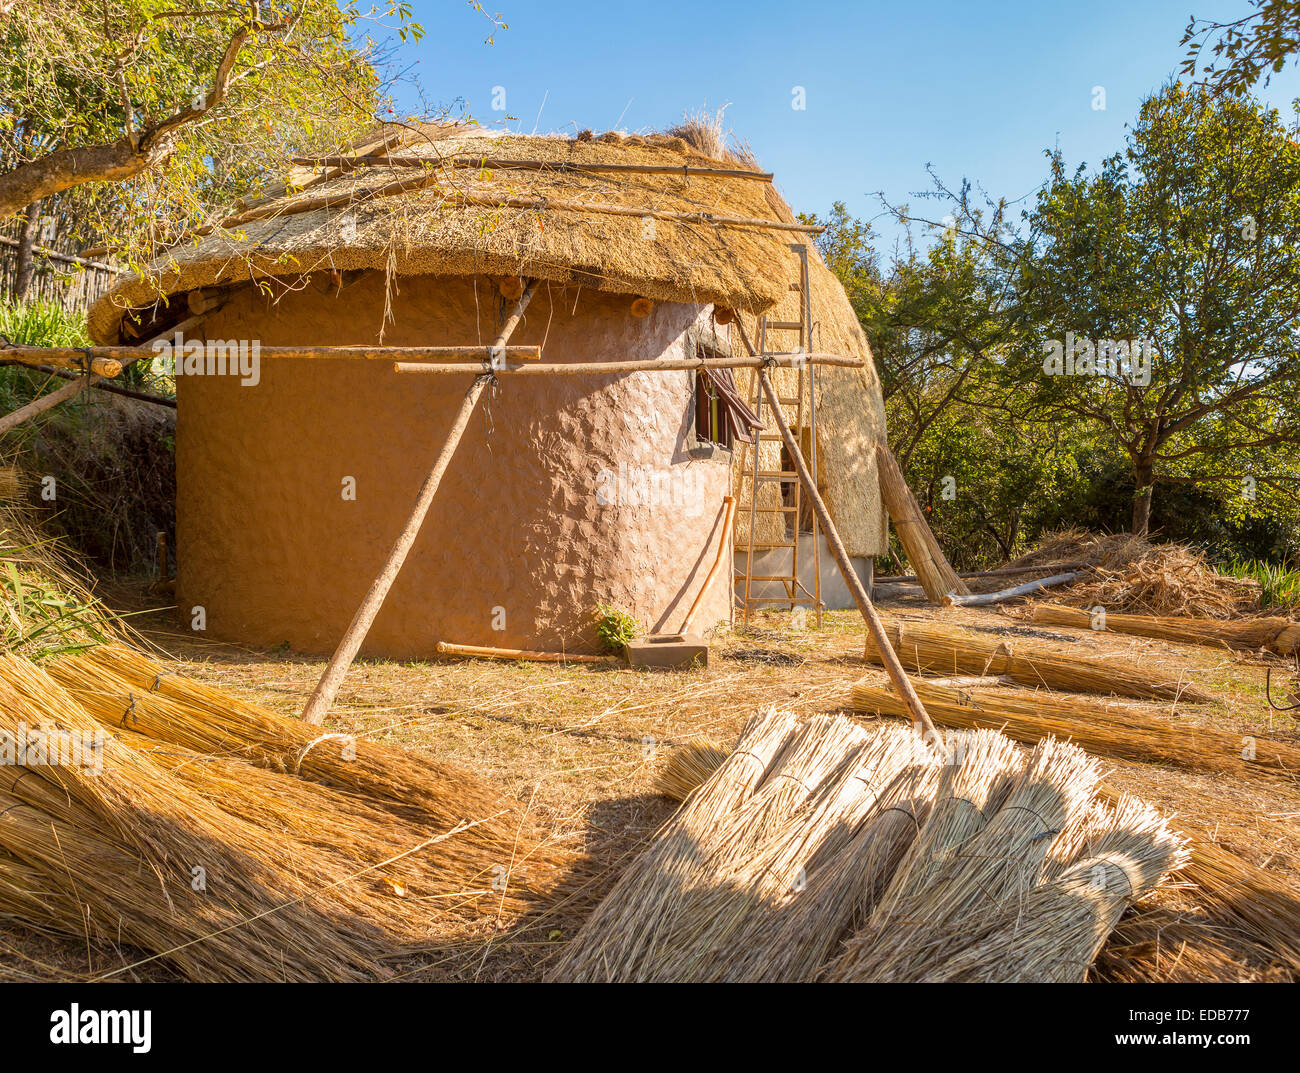 Swasiland, Afrika - Bau einer traditionellen Bienenstock-Hütte von strohgedeckten Trockenrasen im Naturreservat Phophonyane gebildet Stockfoto